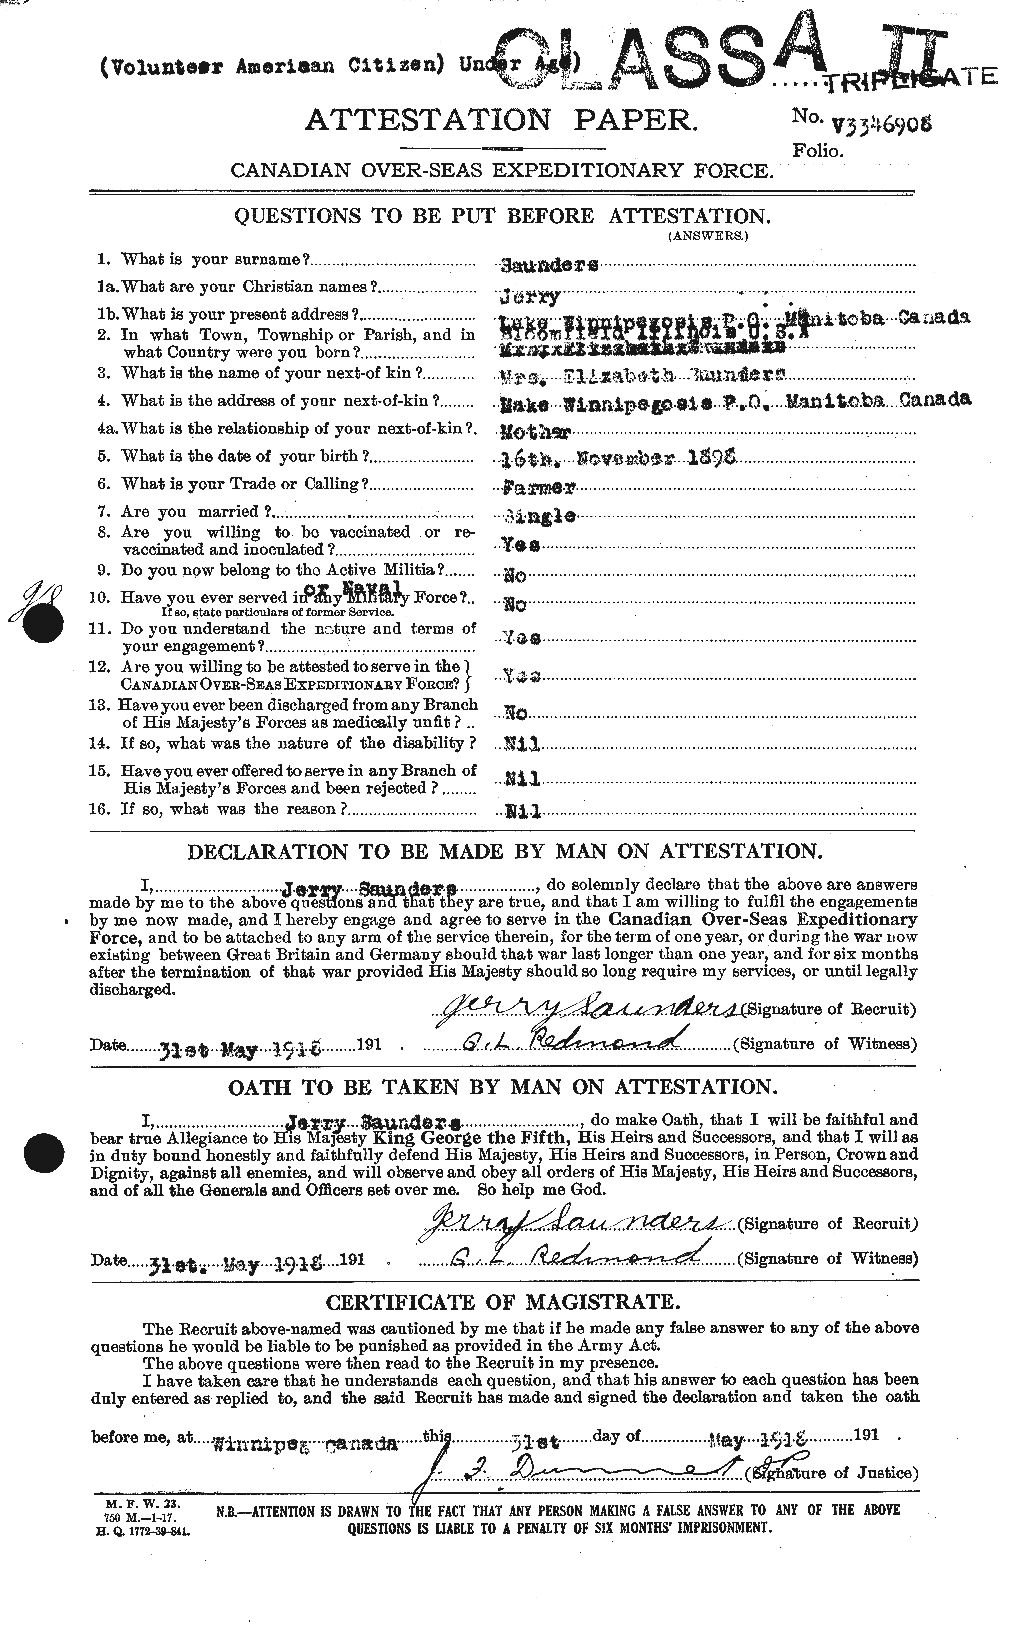 Dossiers du Personnel de la Première Guerre mondiale - CEC 080621a